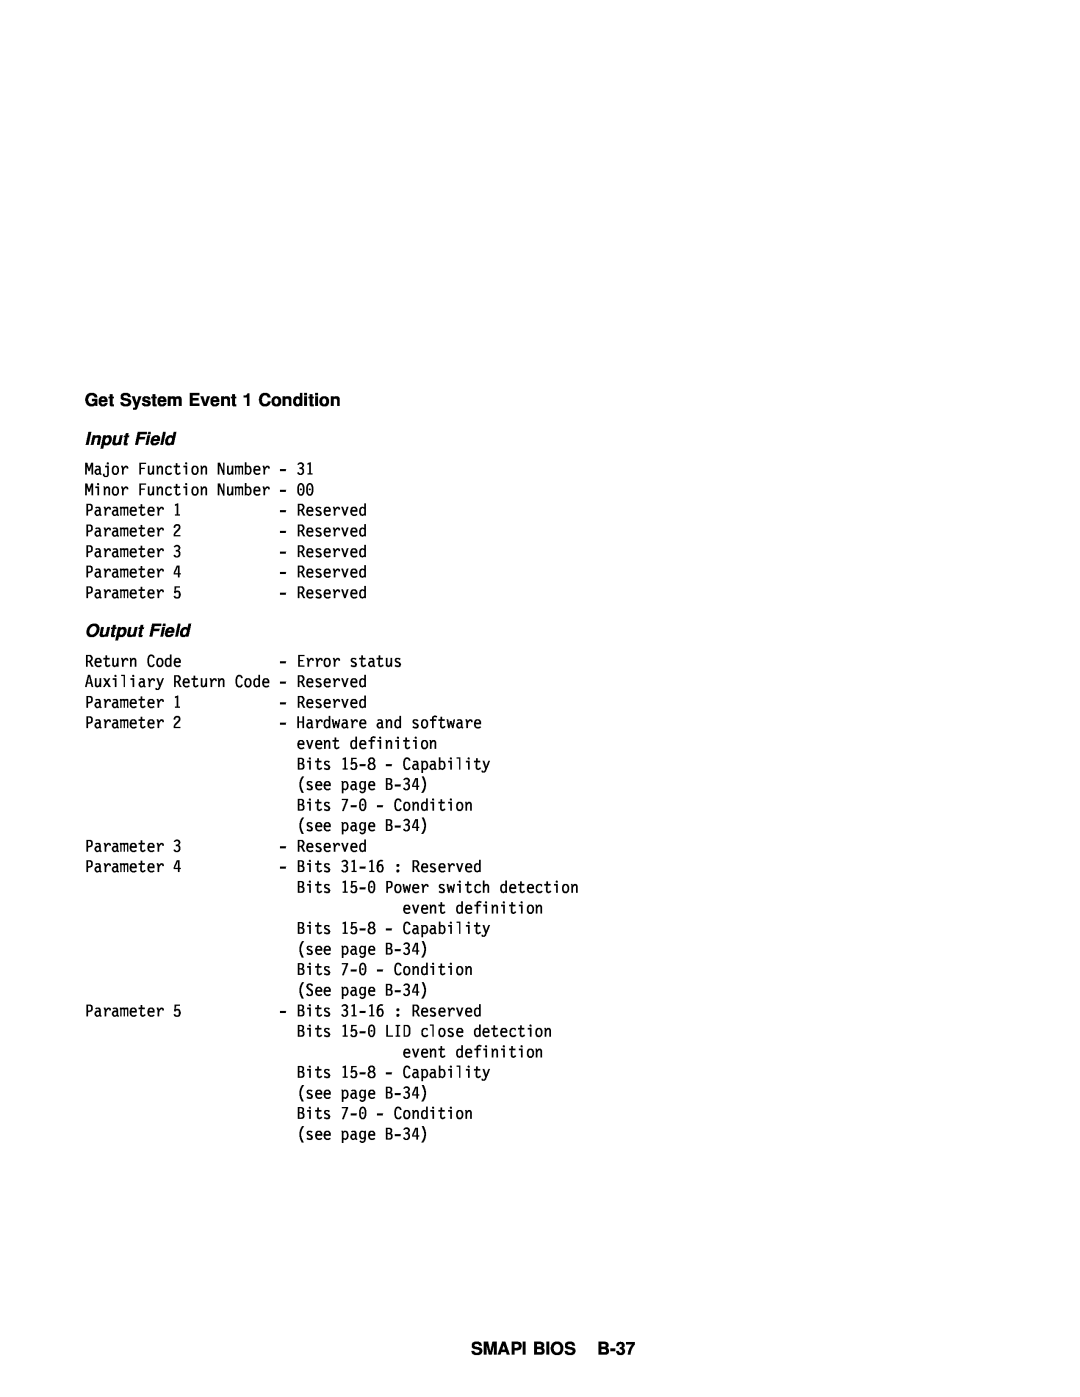 IBM 770 manual Get System Event, SMAPI BIOS B-37, Condition 